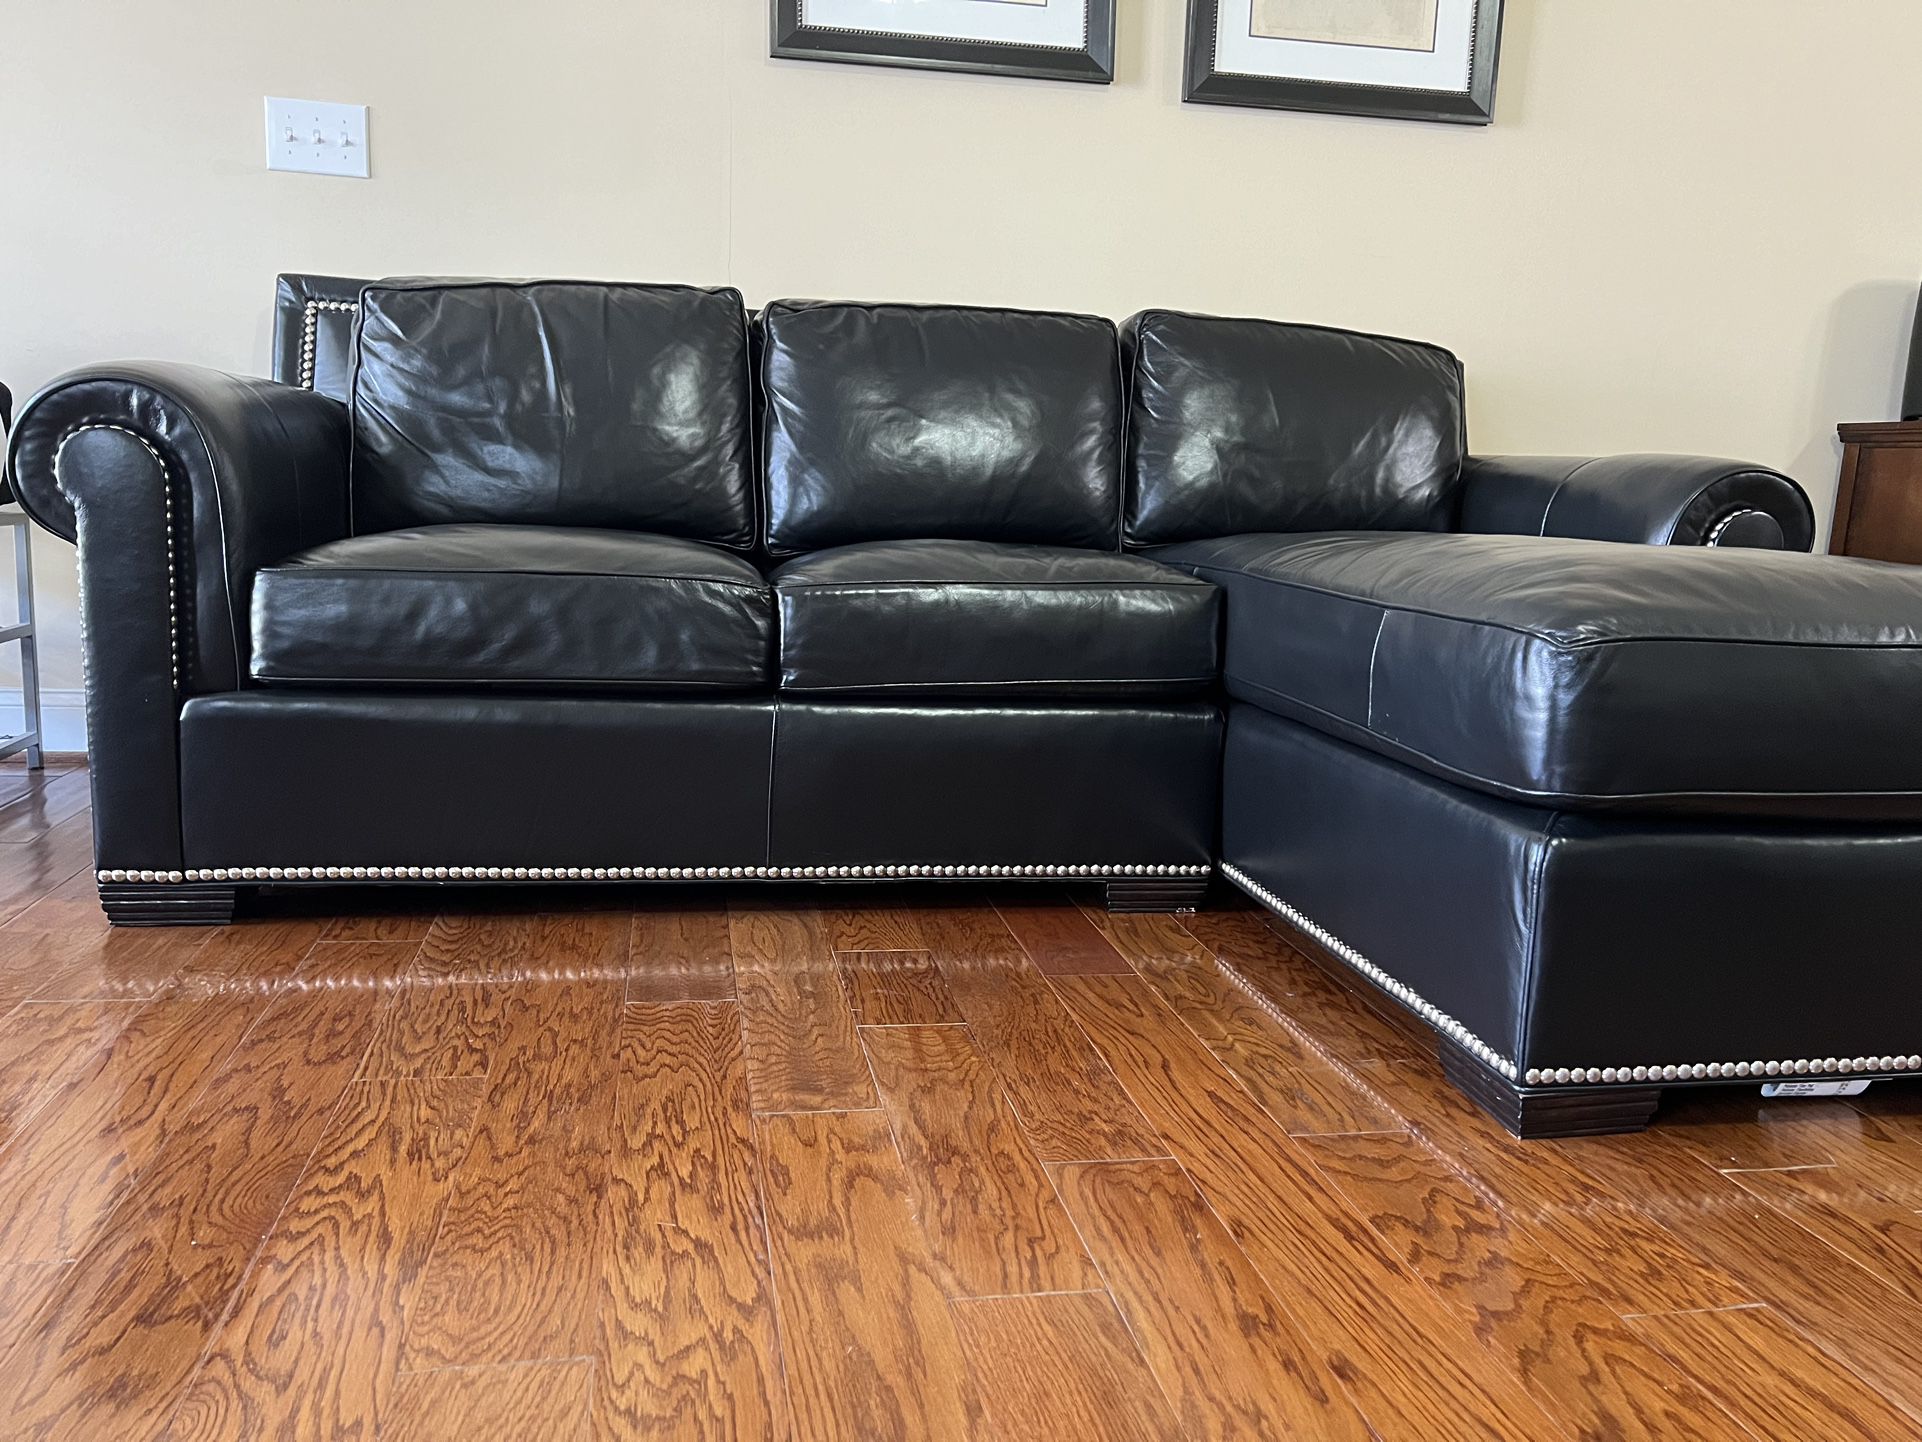 Thomasville Leather Sofa